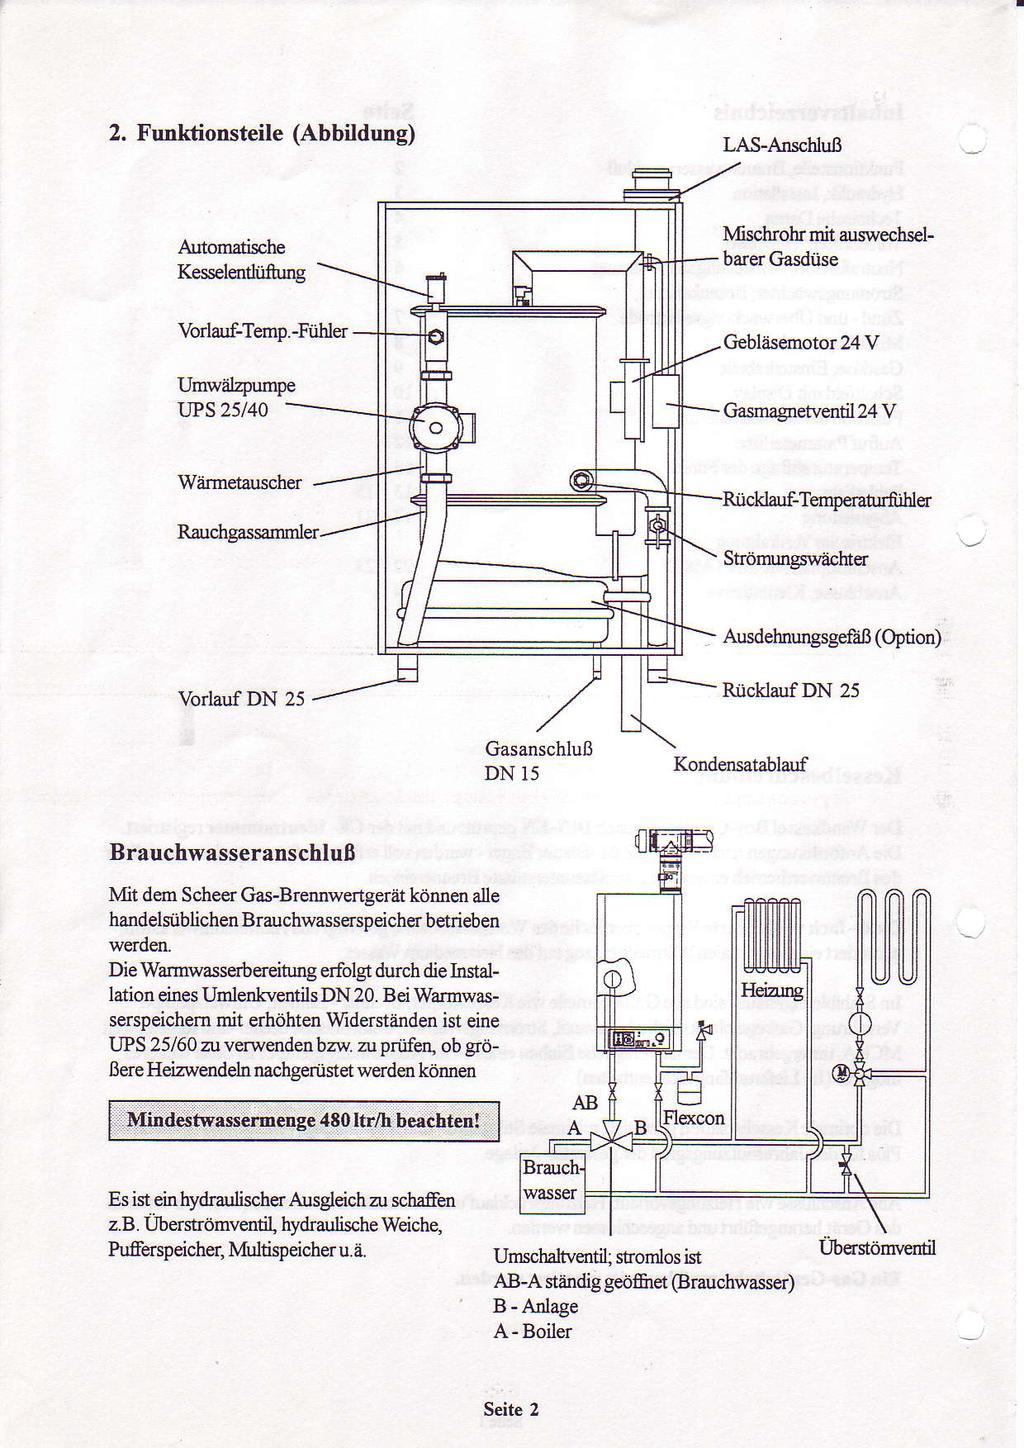 2, Funktionsteile (Abbildung) As-Arischluß Automatische Kesselendtifumg Mschrolr mit auswechselbarer Gasdüse Vorlauf-Temp.-Fülder Umwälzpumpe?